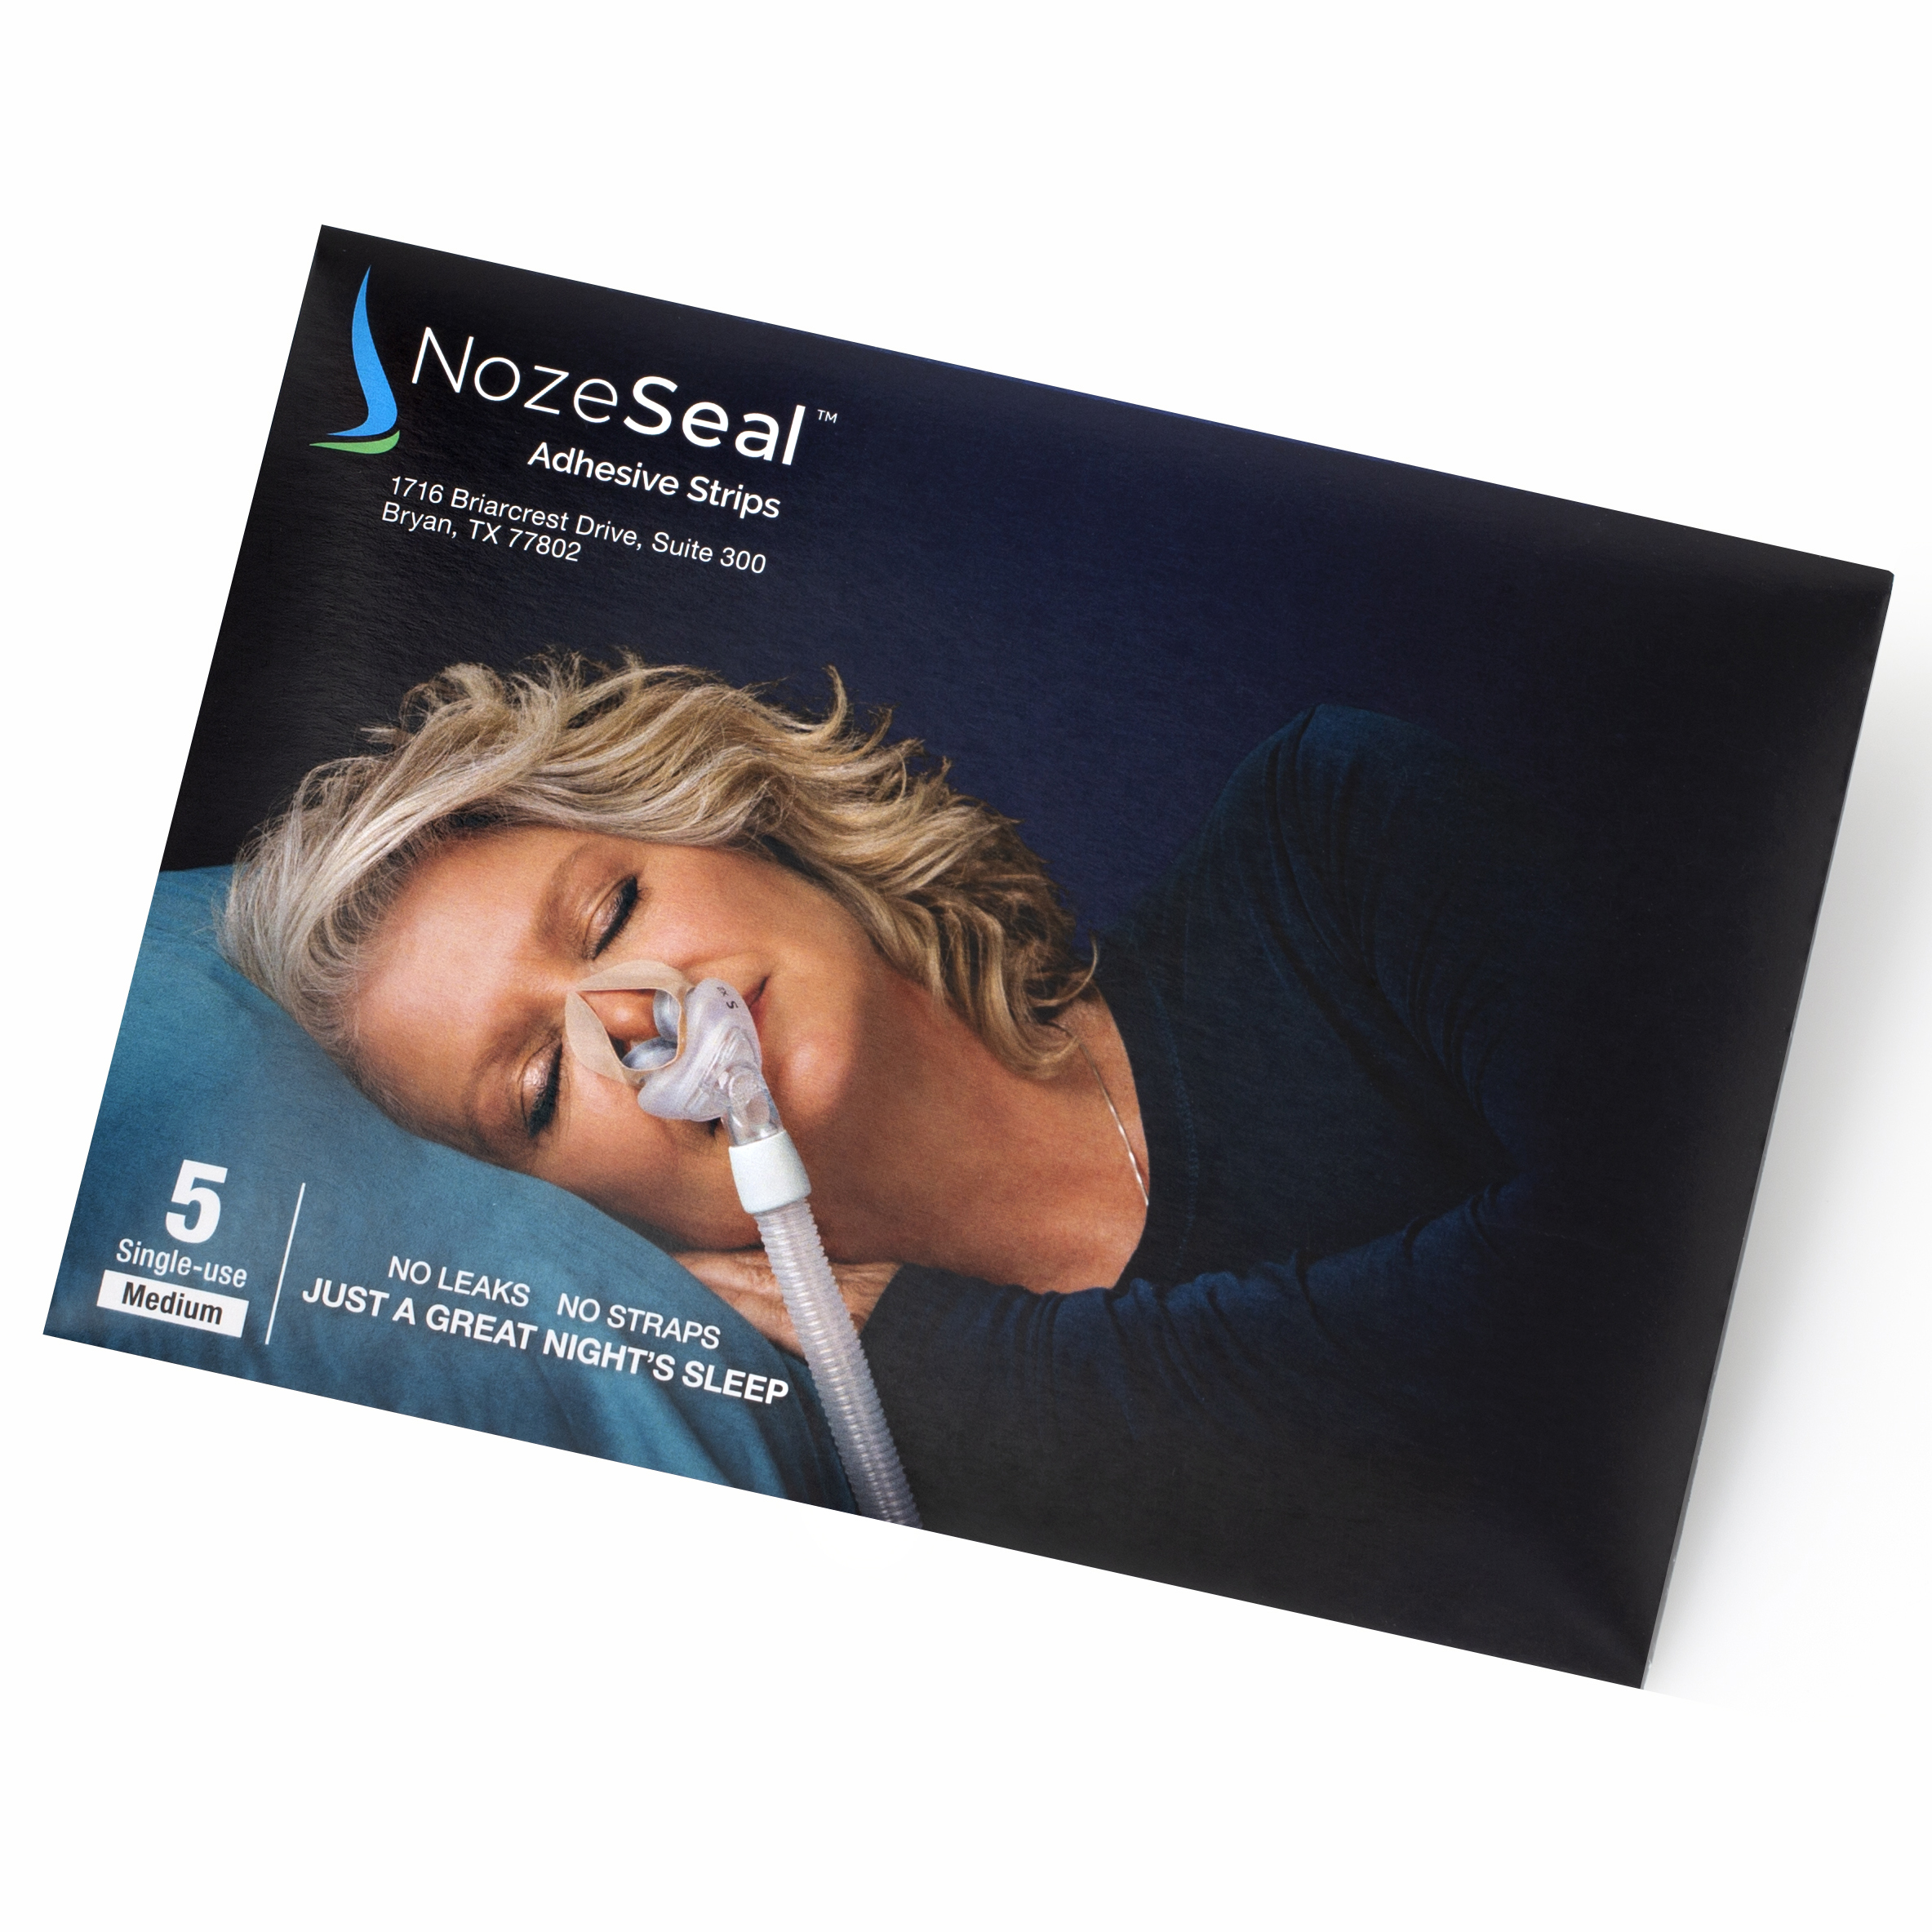 NozeSeal, LLC, Invention Helps Sleep Apnea Patients